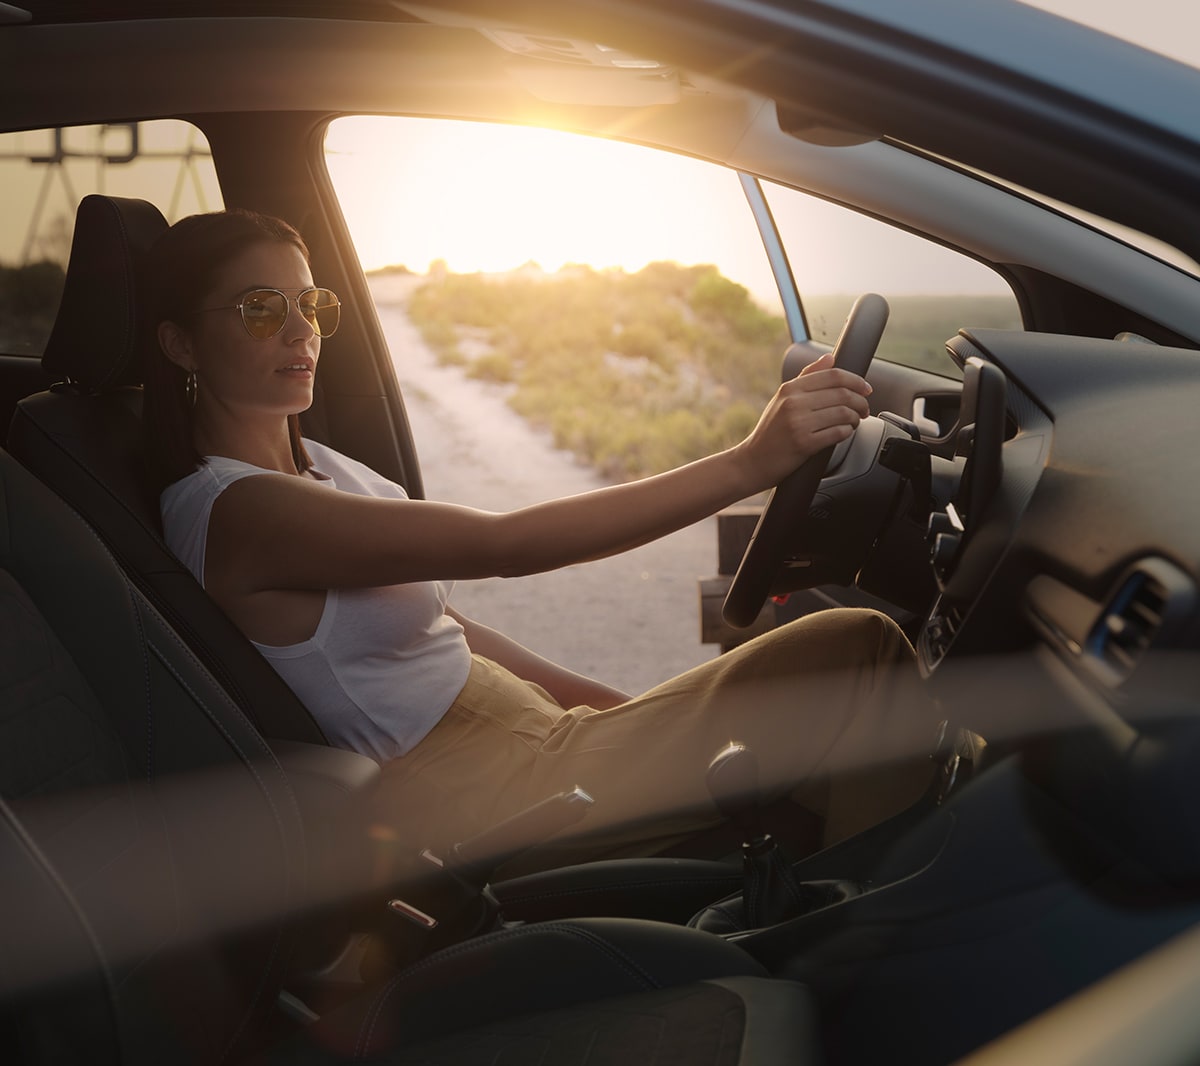 Ford Fiesta. Innenraumansicht. Eine Frau sitz bei geöffneter Fahrertür auf dem Fahrersitz. Im Hintergrund ein Sonnenuntergang.